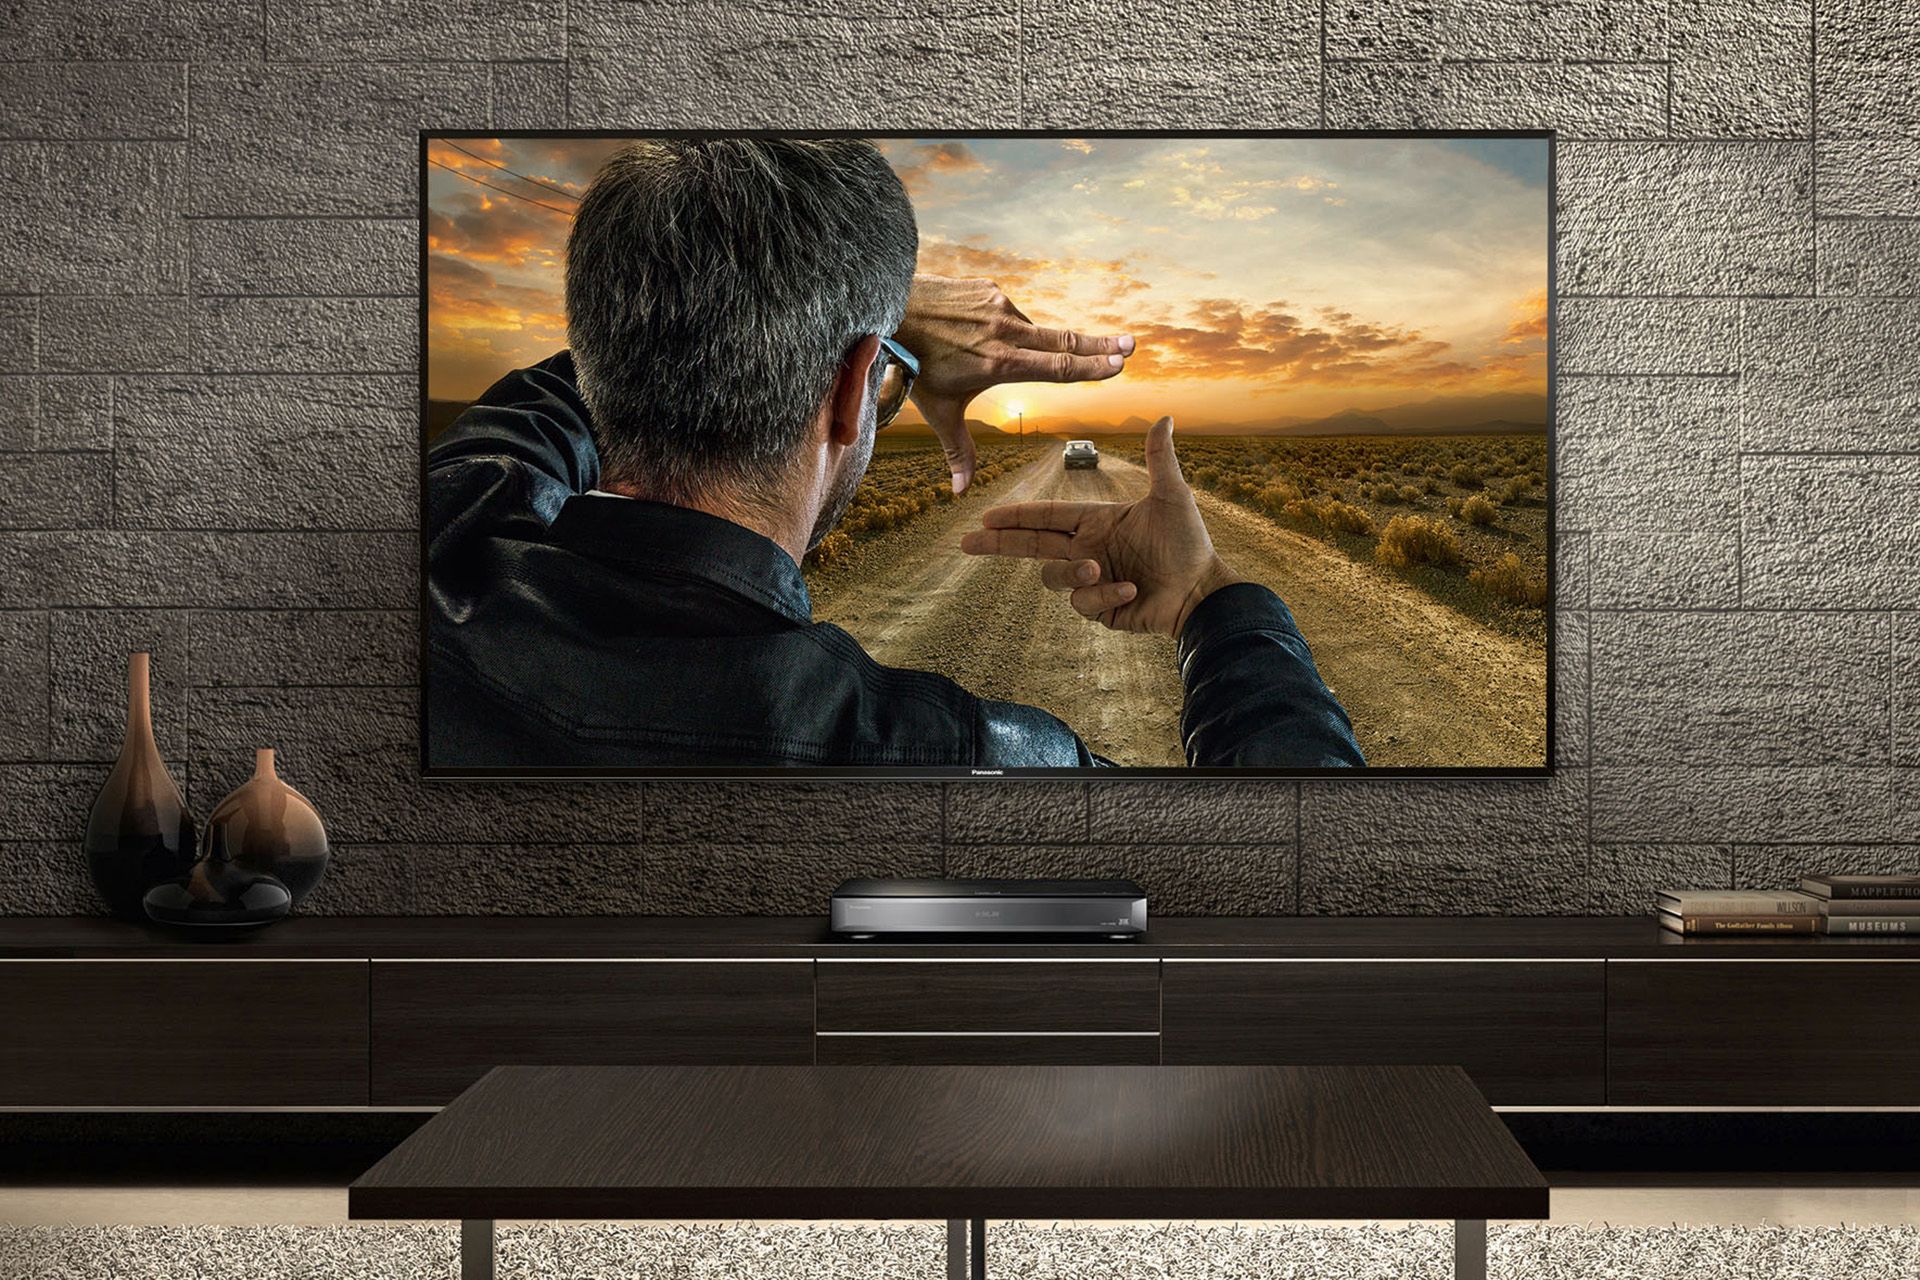 Neue Viera-Smart-TVs und BD-Player von Panasonic - Hollywood zu Hause  erleben